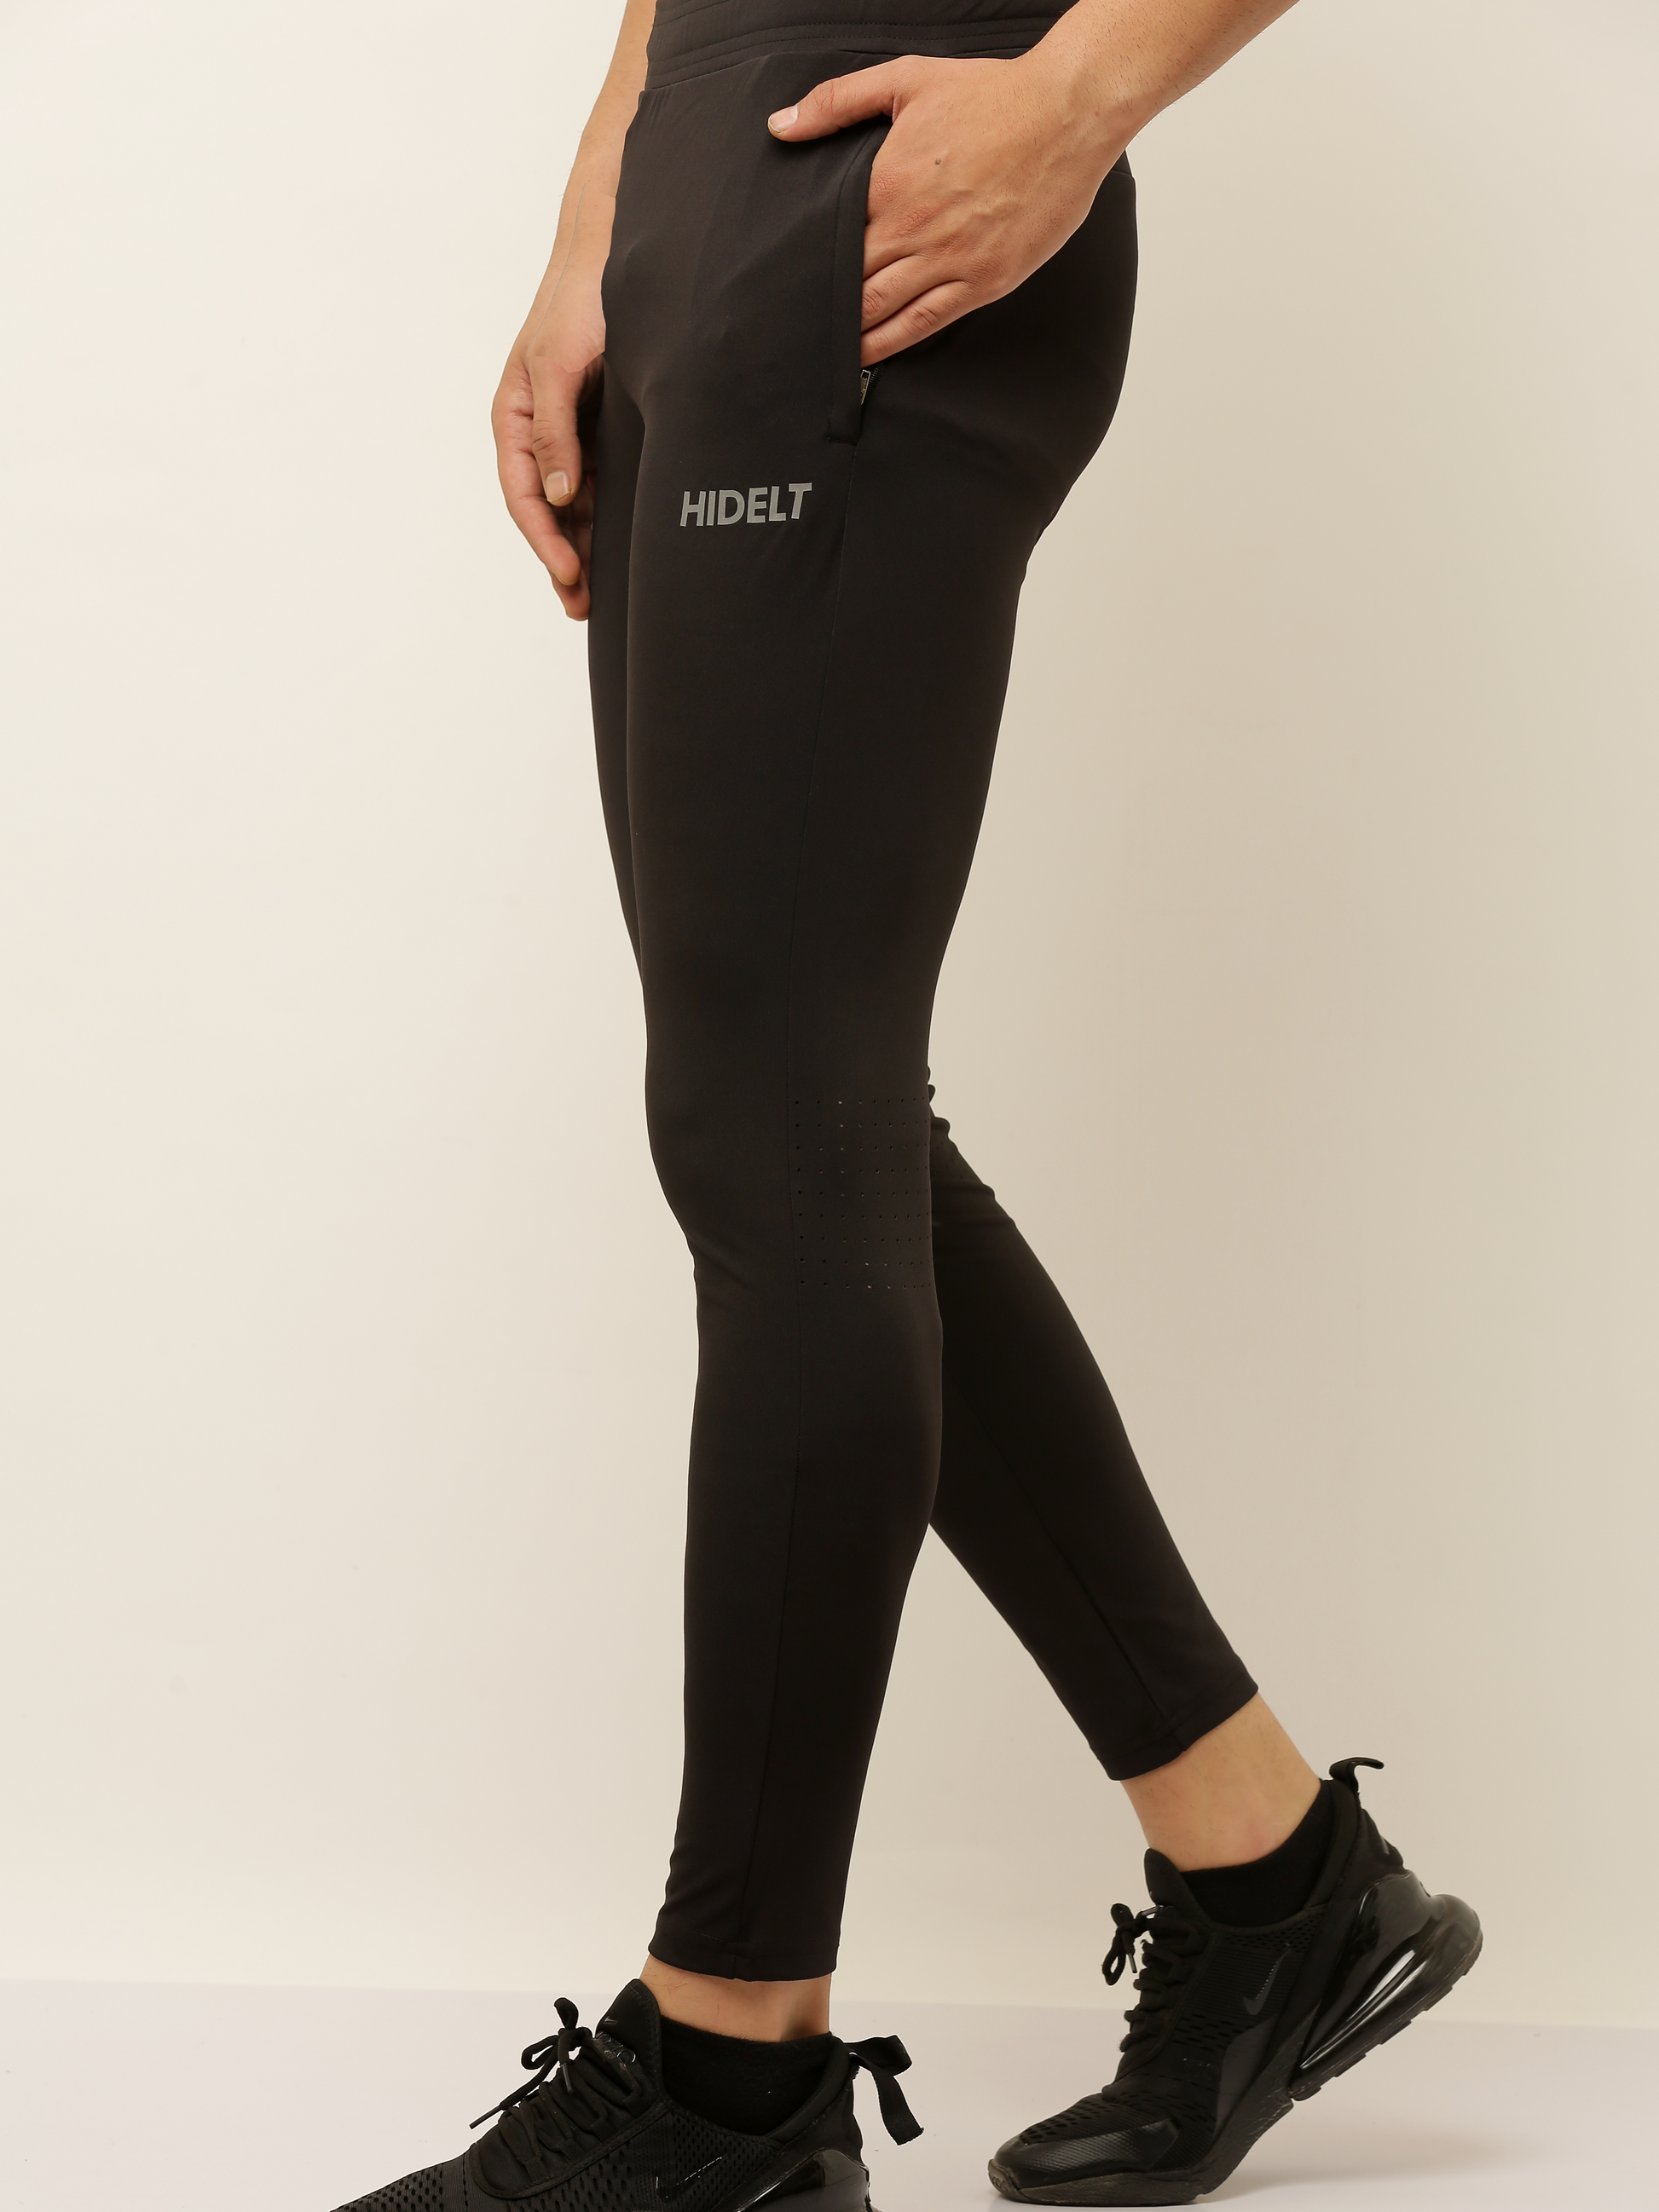 Lycra High Waist Ladies Leggings With Net Pattern Solid Slim Fit